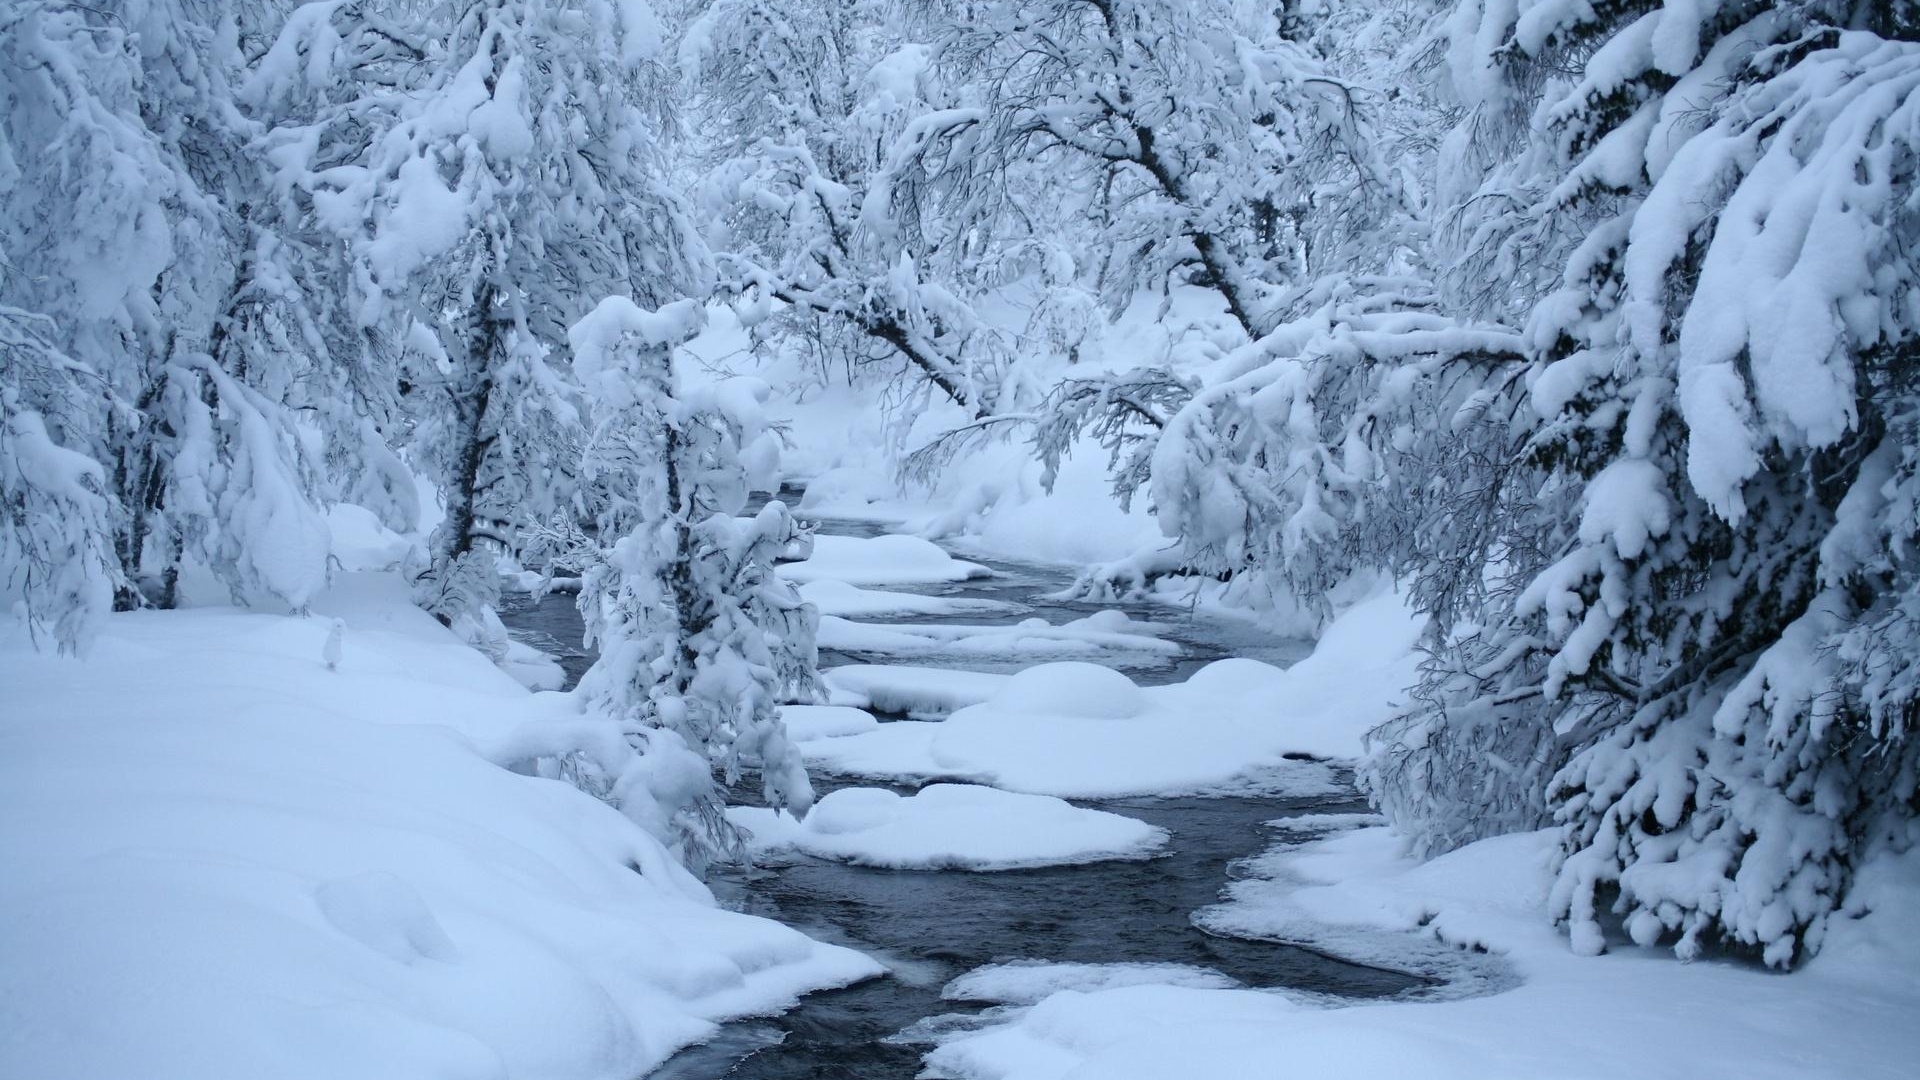 雪景壁纸精选好看的自然风景冬天雪景高清电脑桌面壁纸下载5p 手机壁纸 优美图